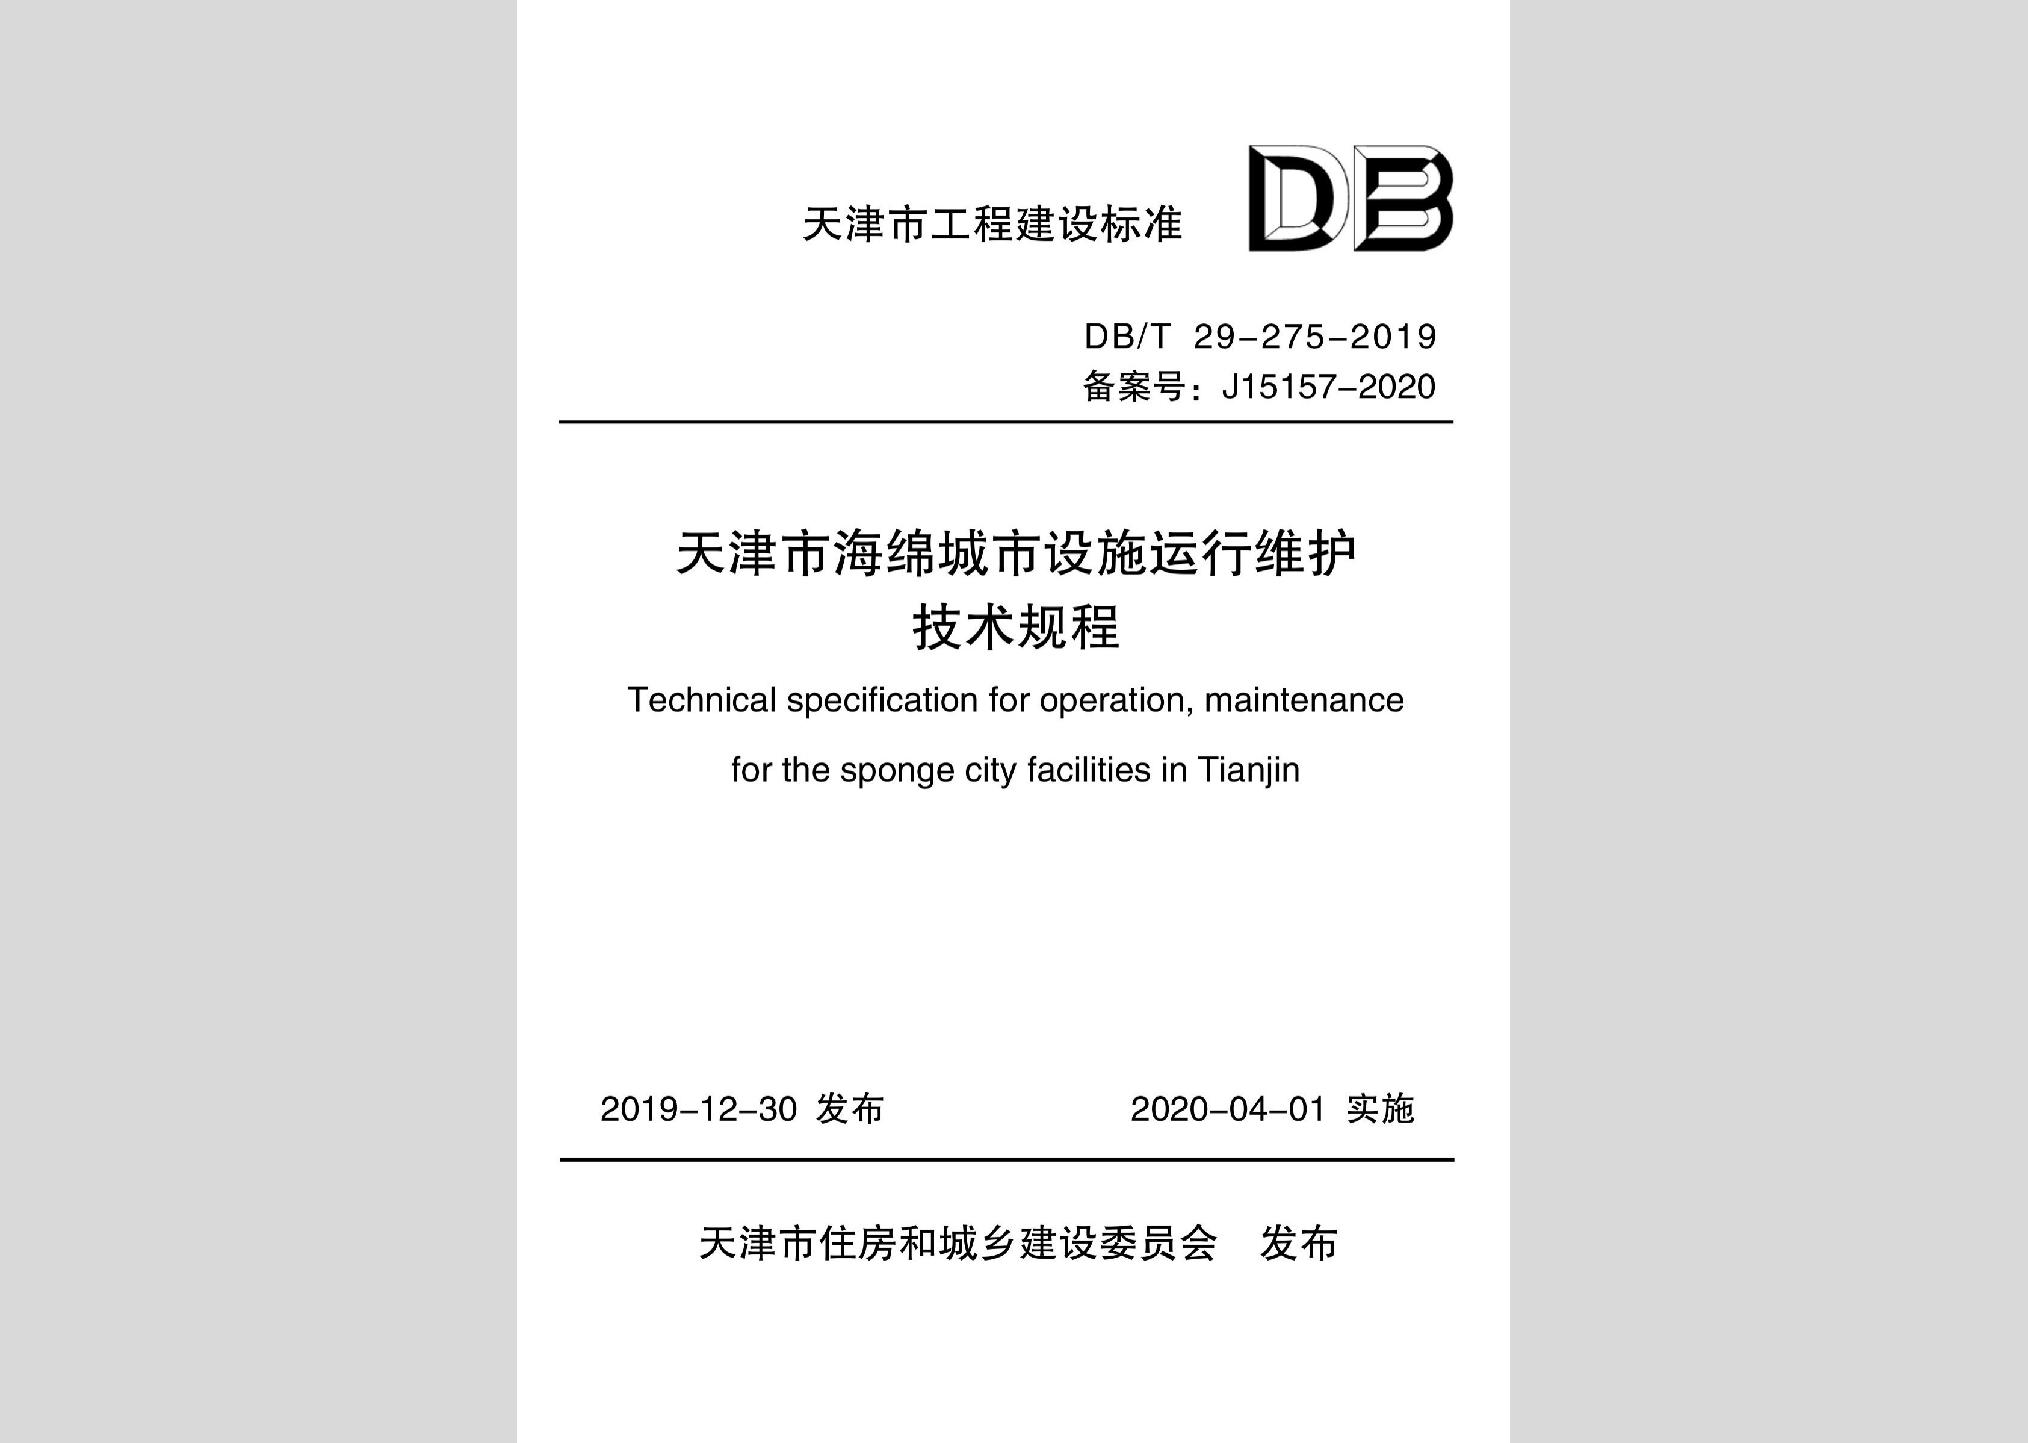 DB/T29-275-2019：天津市海绵城市设施运行维护技术规程